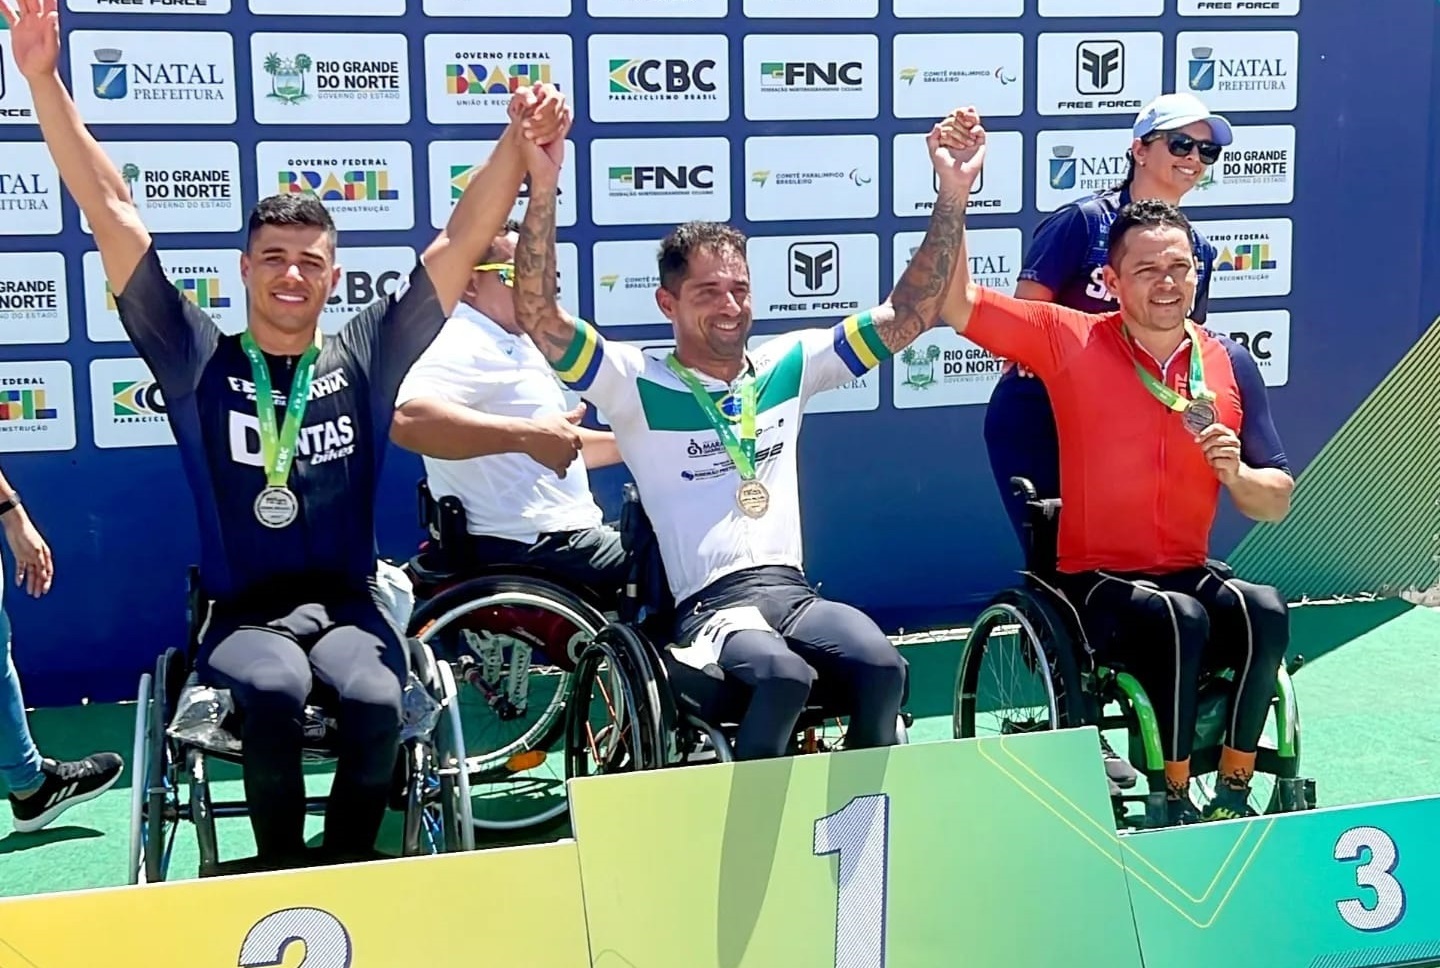 Atletas de Ribeirão Preto brilham na primeira etapa da Copa Brasil de Paraciclismo em Natal -RN